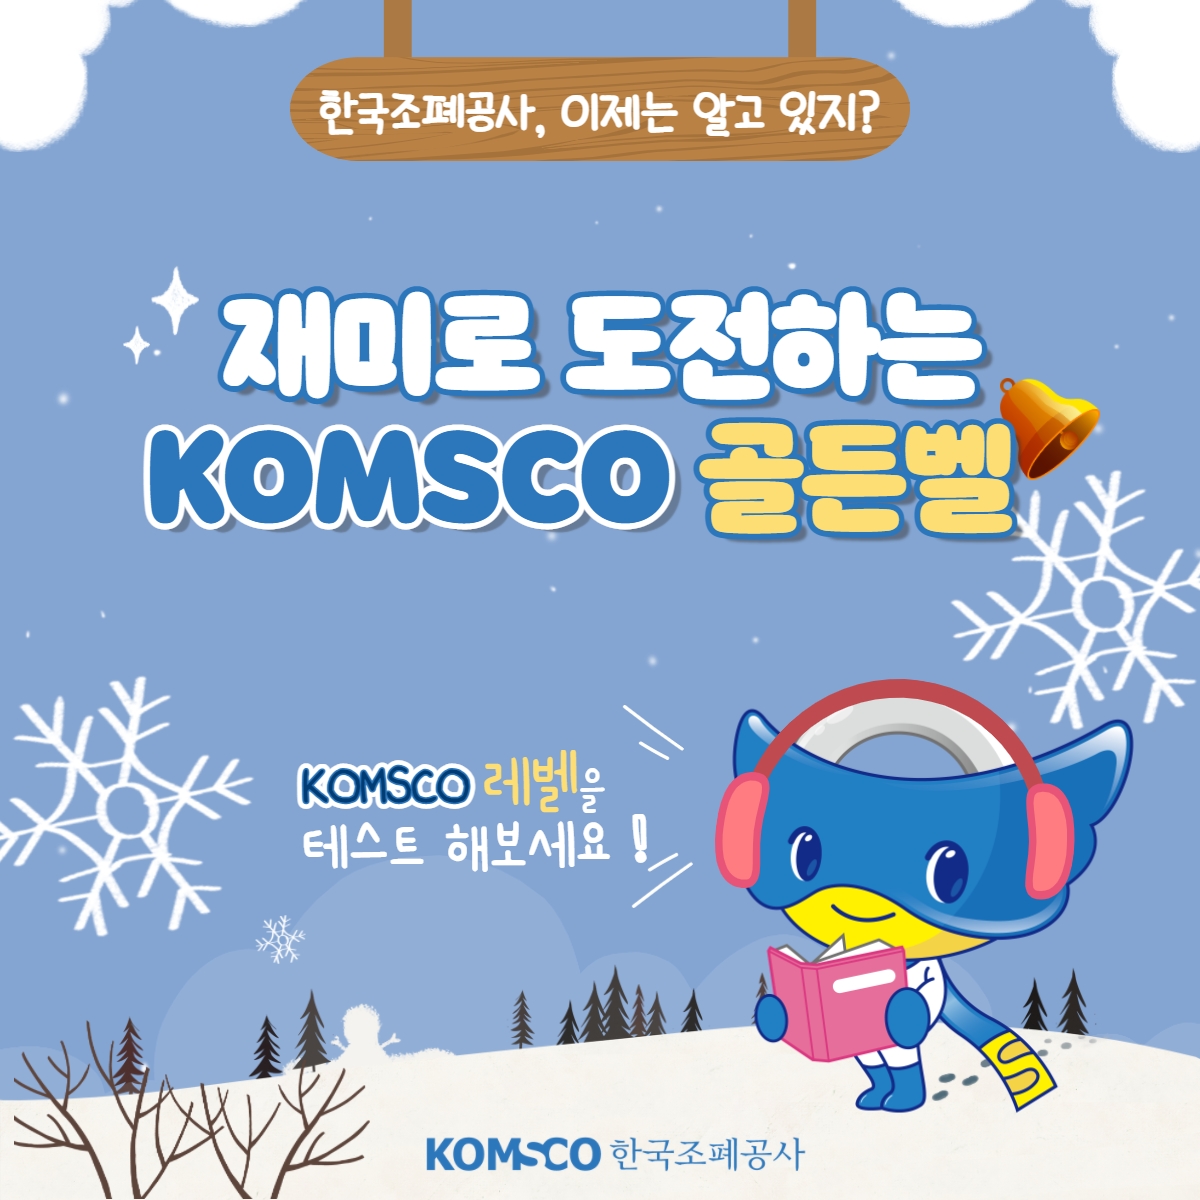 한국조폐공사, 이제는 알고 있지?  재미로 도전하는 🔔KOMSCO 골든벨🔔!  KOMSCO 레벨을 테스트 해보세요!